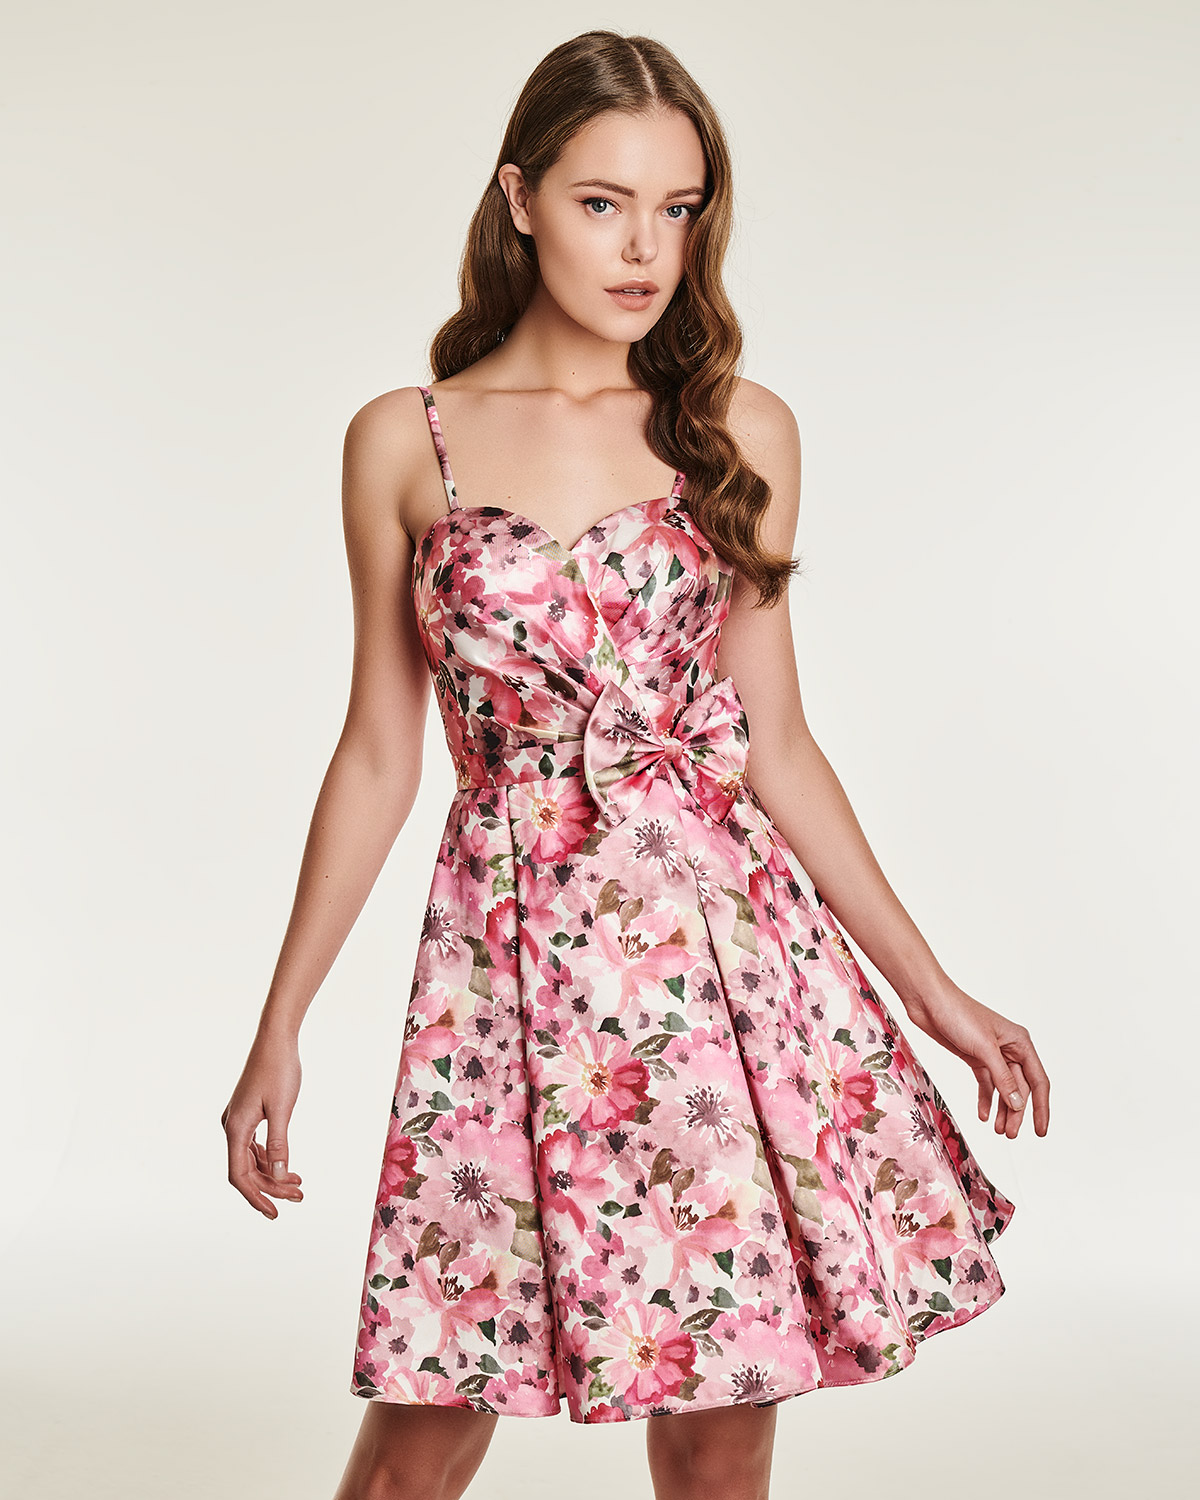 Κοκτέιλ Φορέματα / Κοκτέιλ φόρεμα με φλοράλ μοτίβο και φιόγκο στη μέση